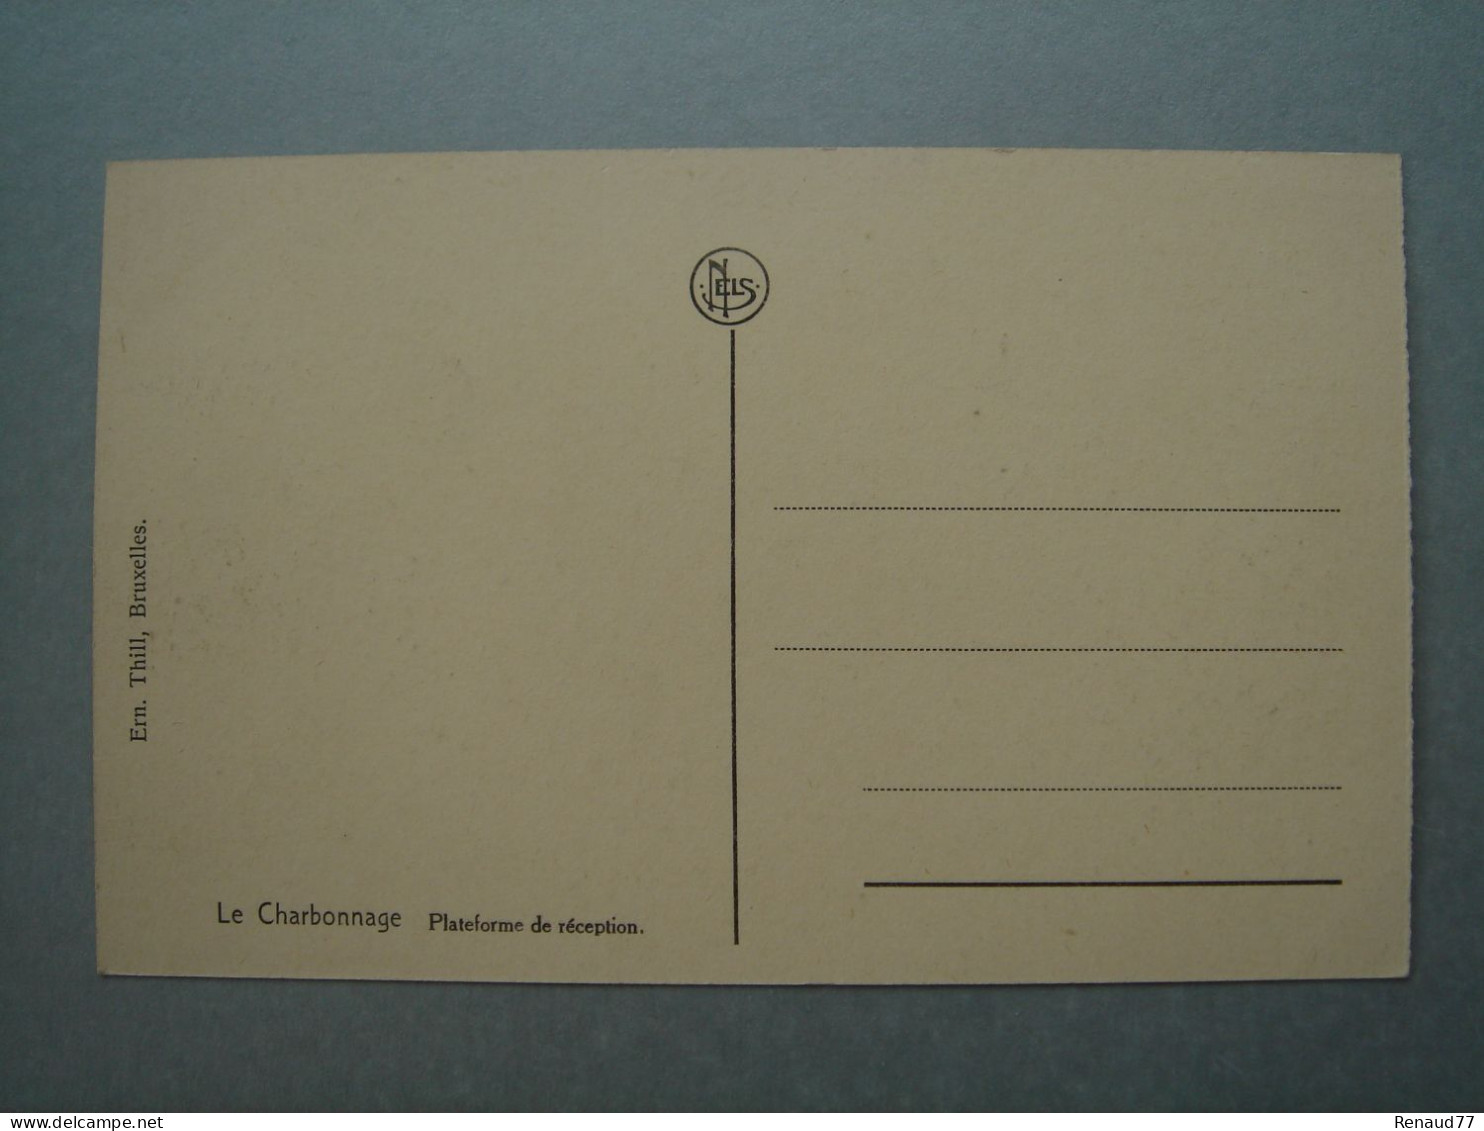 Le Charbonnage - Bascoup - Lot 7 Cartes - Provient surement d'un carnet